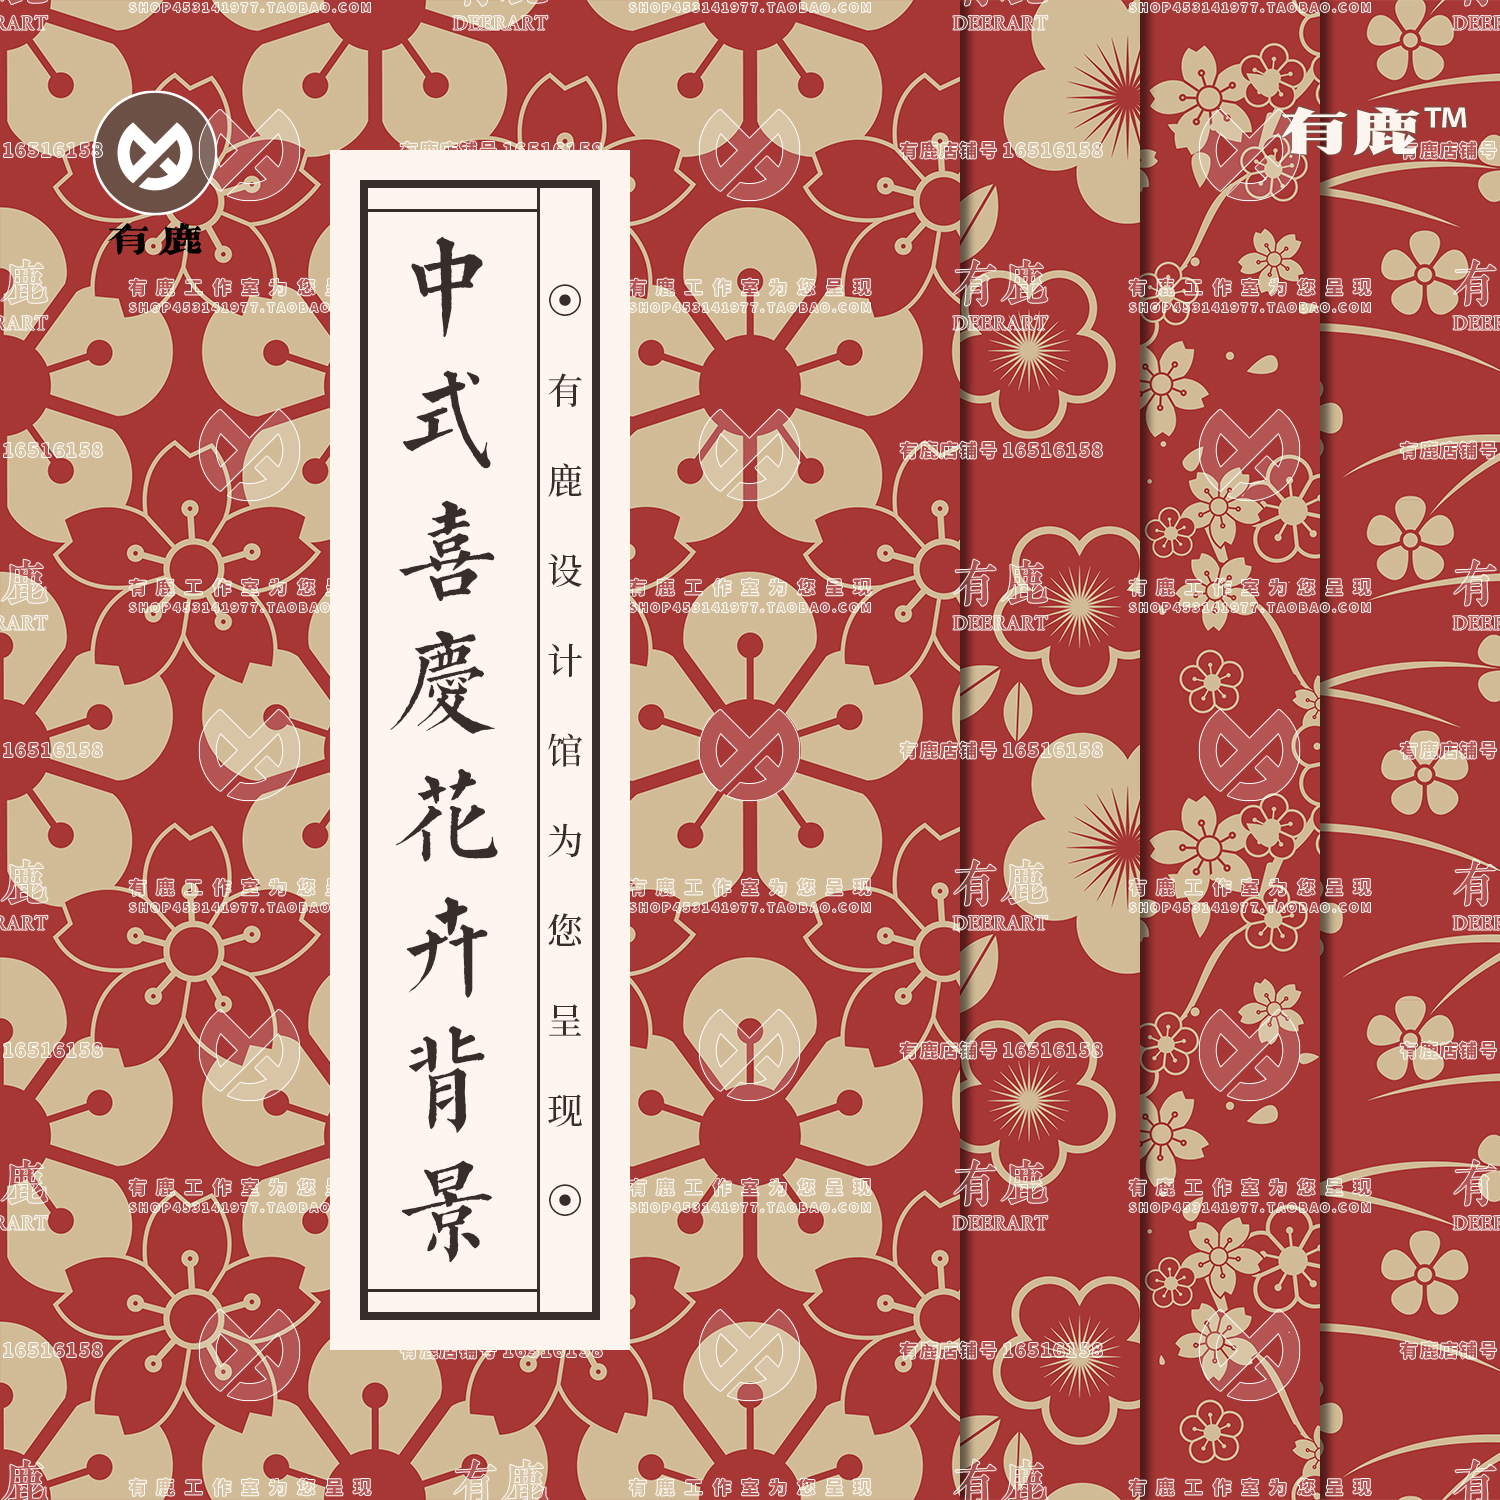 中式古风红色喜庆花草花卉花朵纹样底纹图案红包背景设计矢量素材